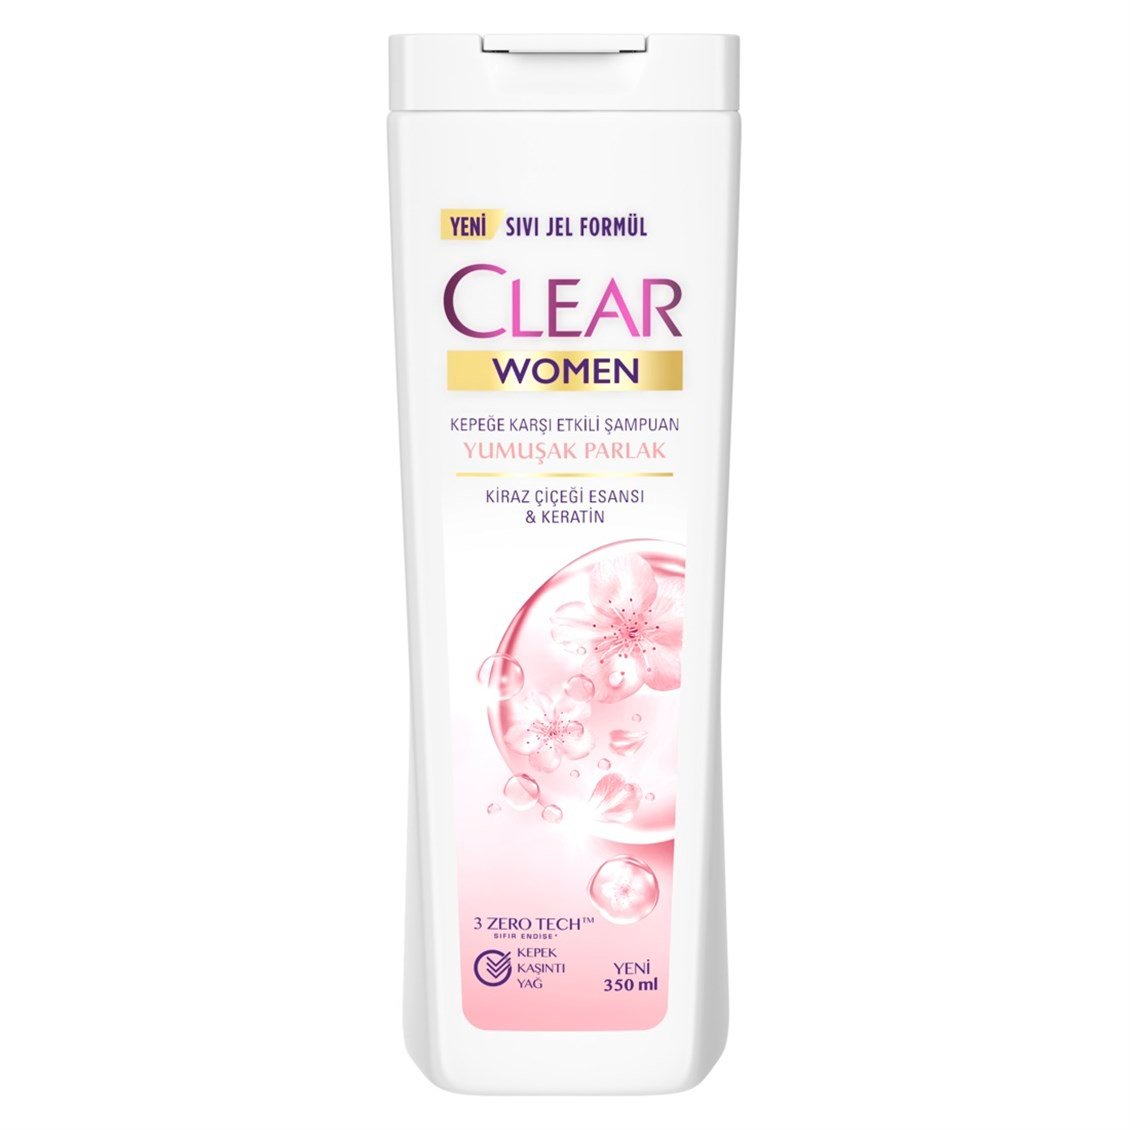 Clear Women Kepeğe Karşı Etkili Şampuan Yumuşak Parlak Kiraz Çiçeği Esansı  & Keratin 350 ml - Onur Market